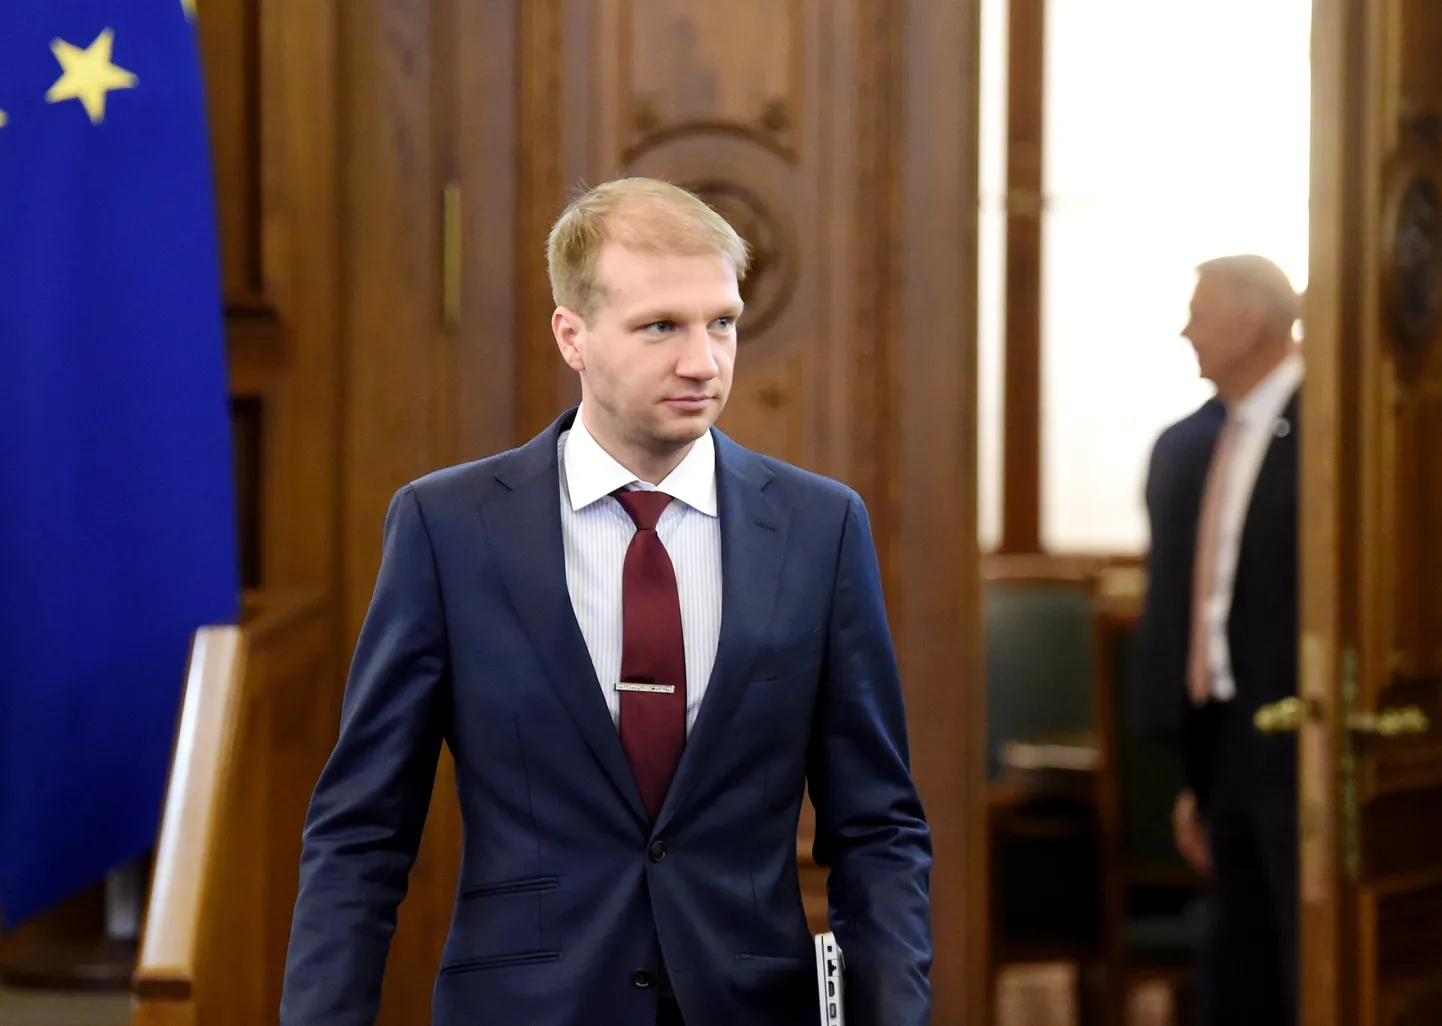 Klimata un enerģētikas ministra amata kandidāts Kaspars Melnis.